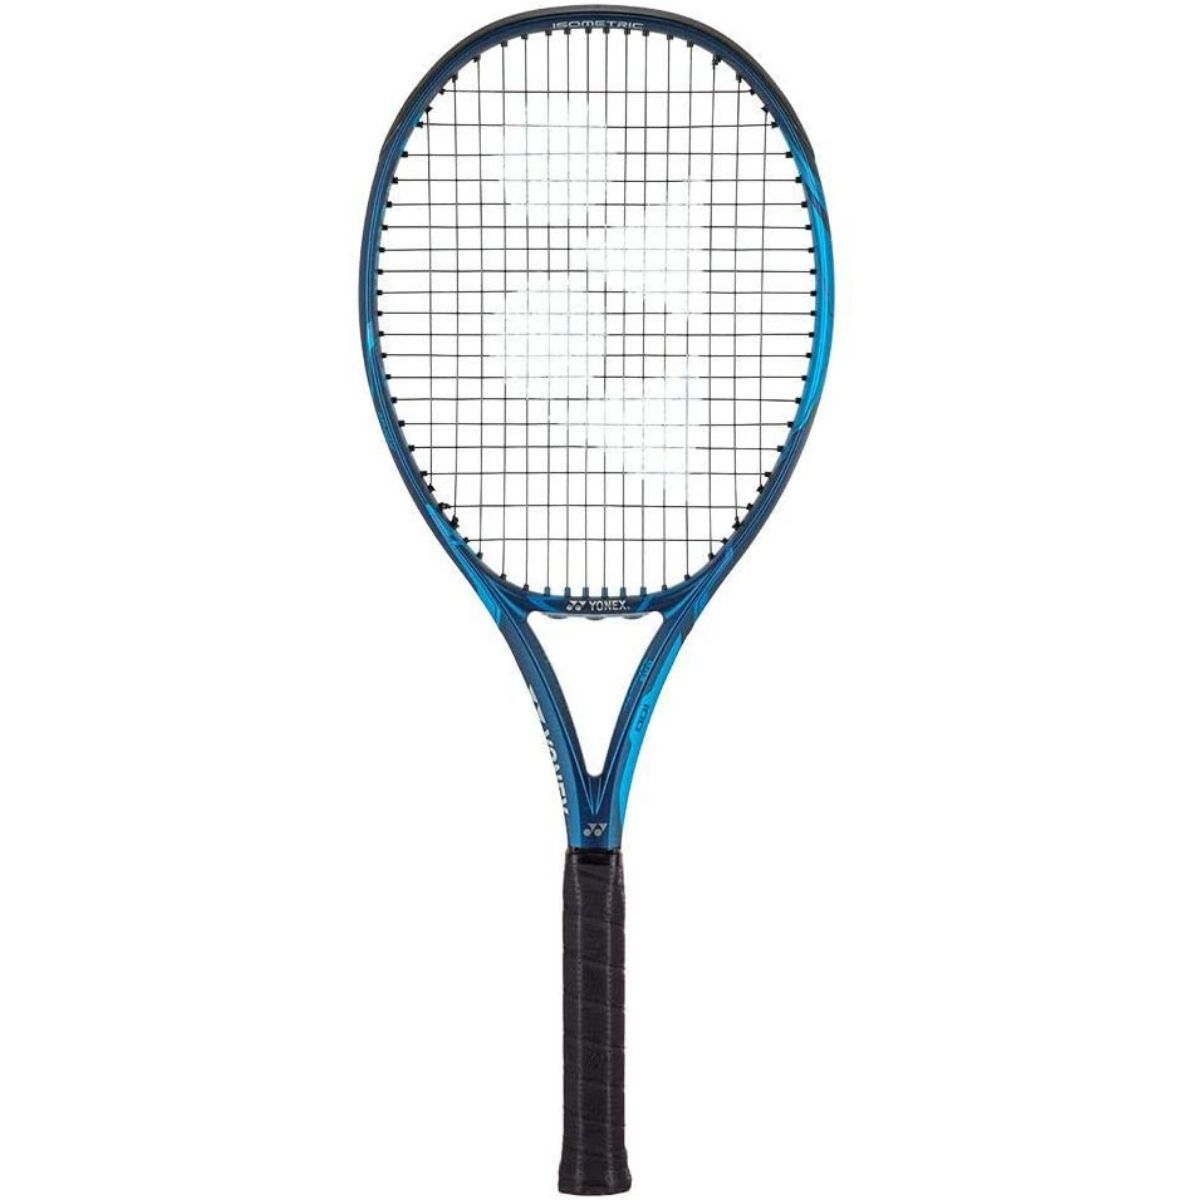 Yonex Ezone 98 tennis racket review